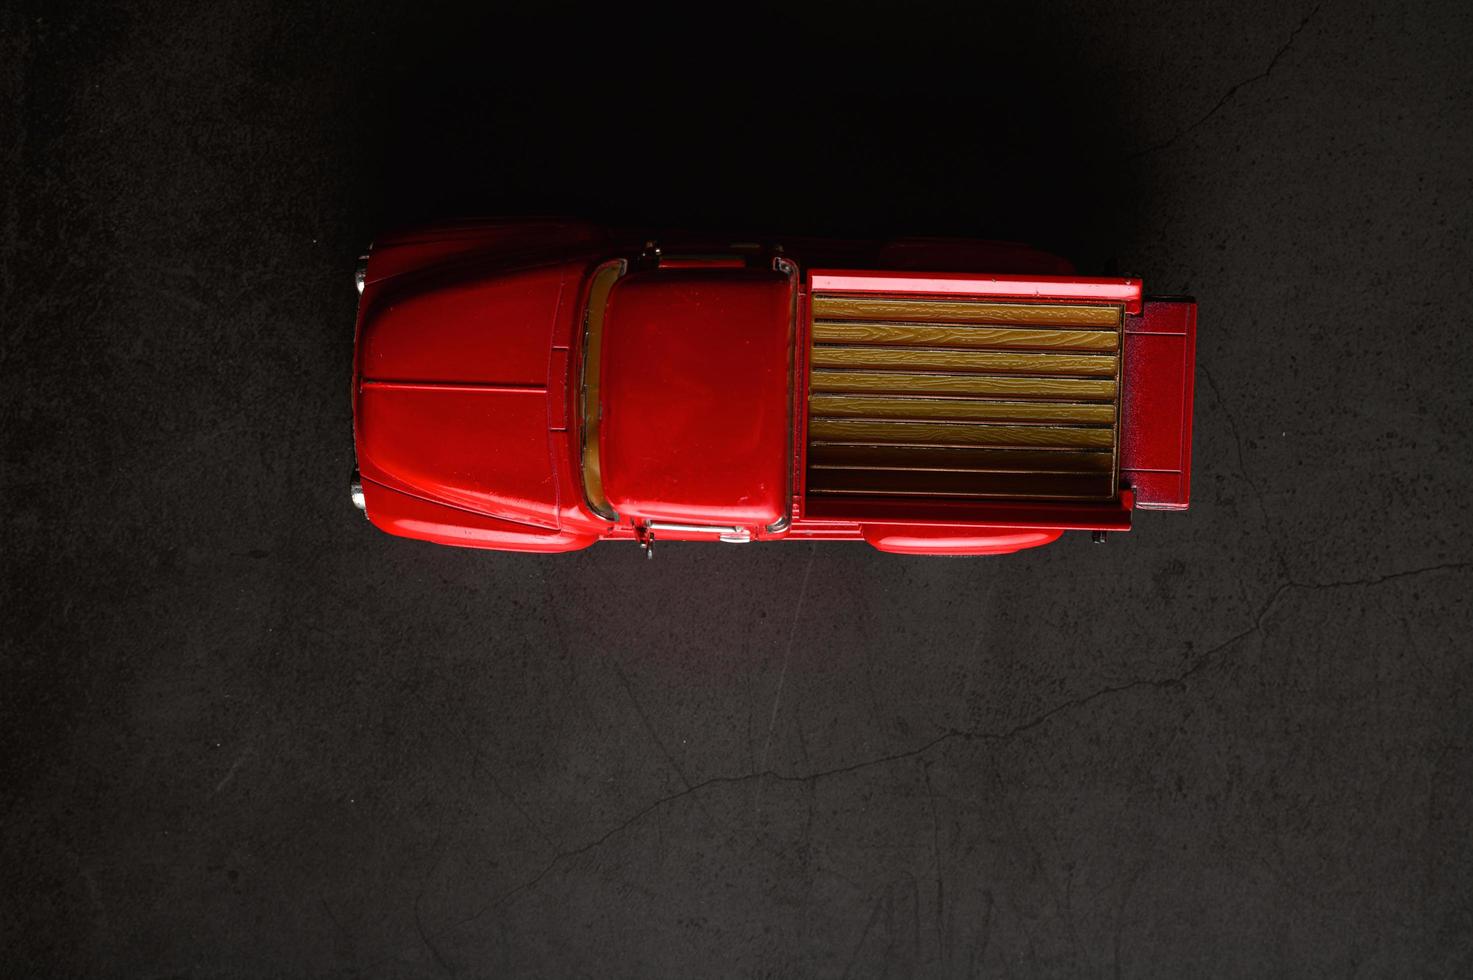 röd pickup modell lastbil på ett svart golv foto